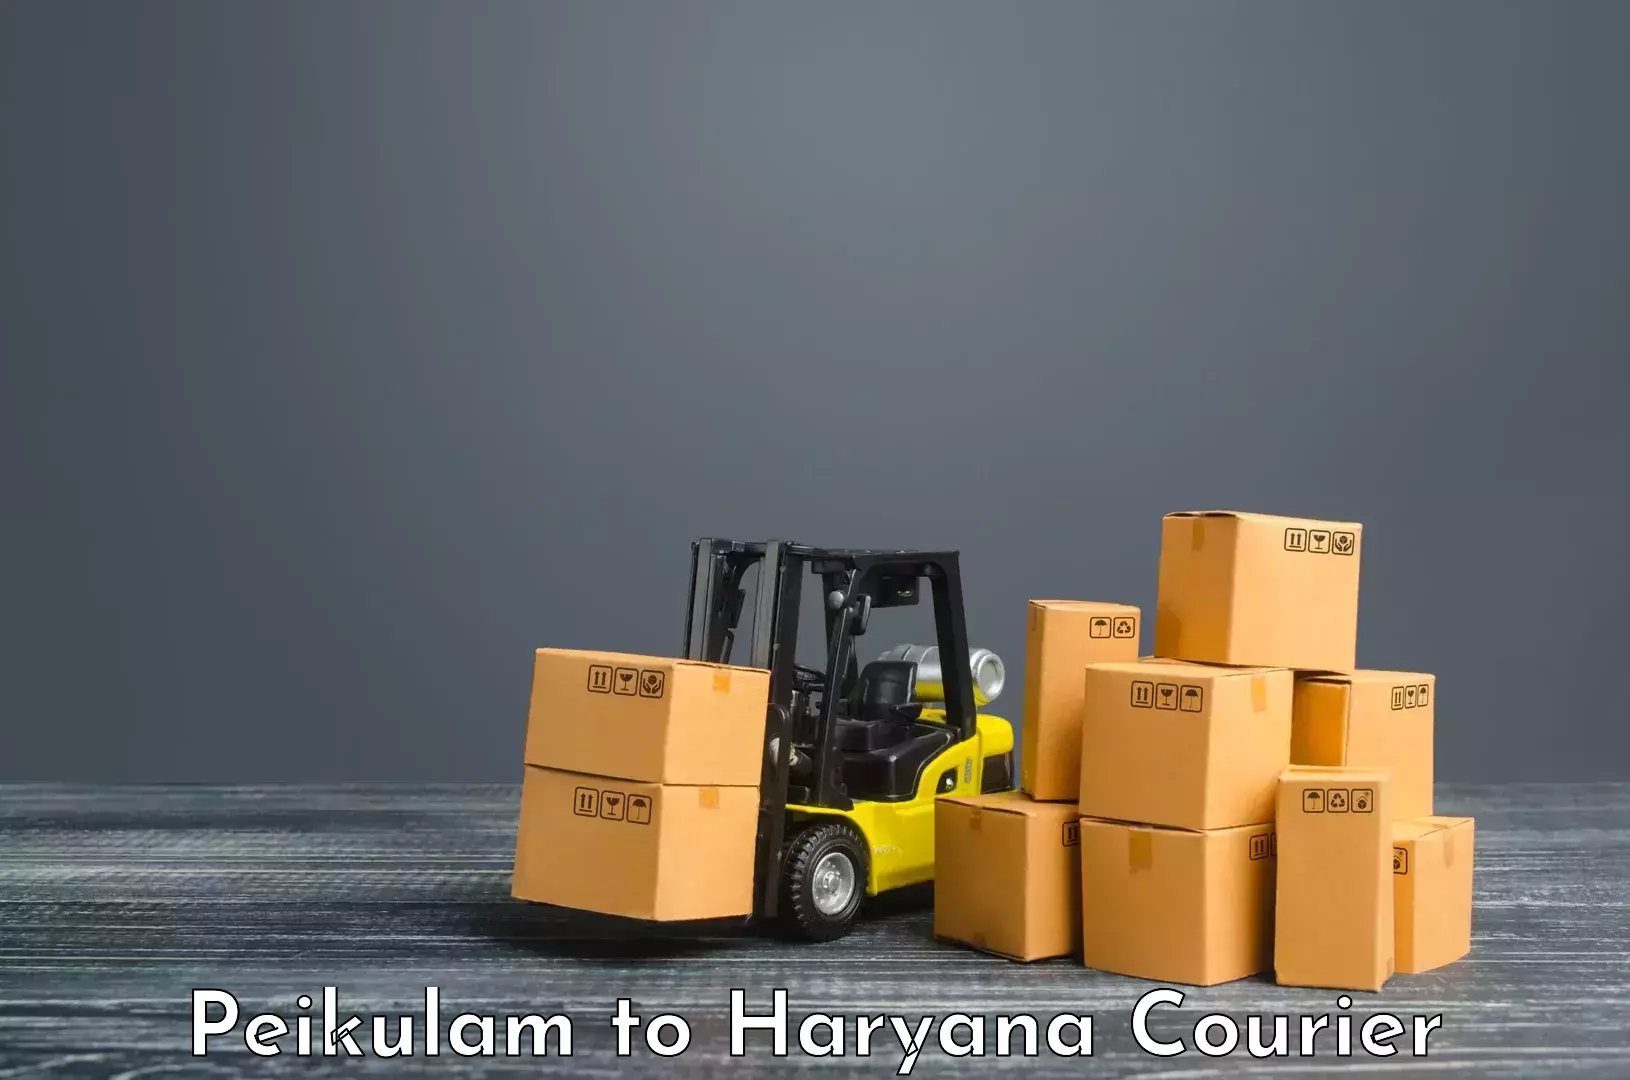 Courier app Peikulam to NCR Haryana